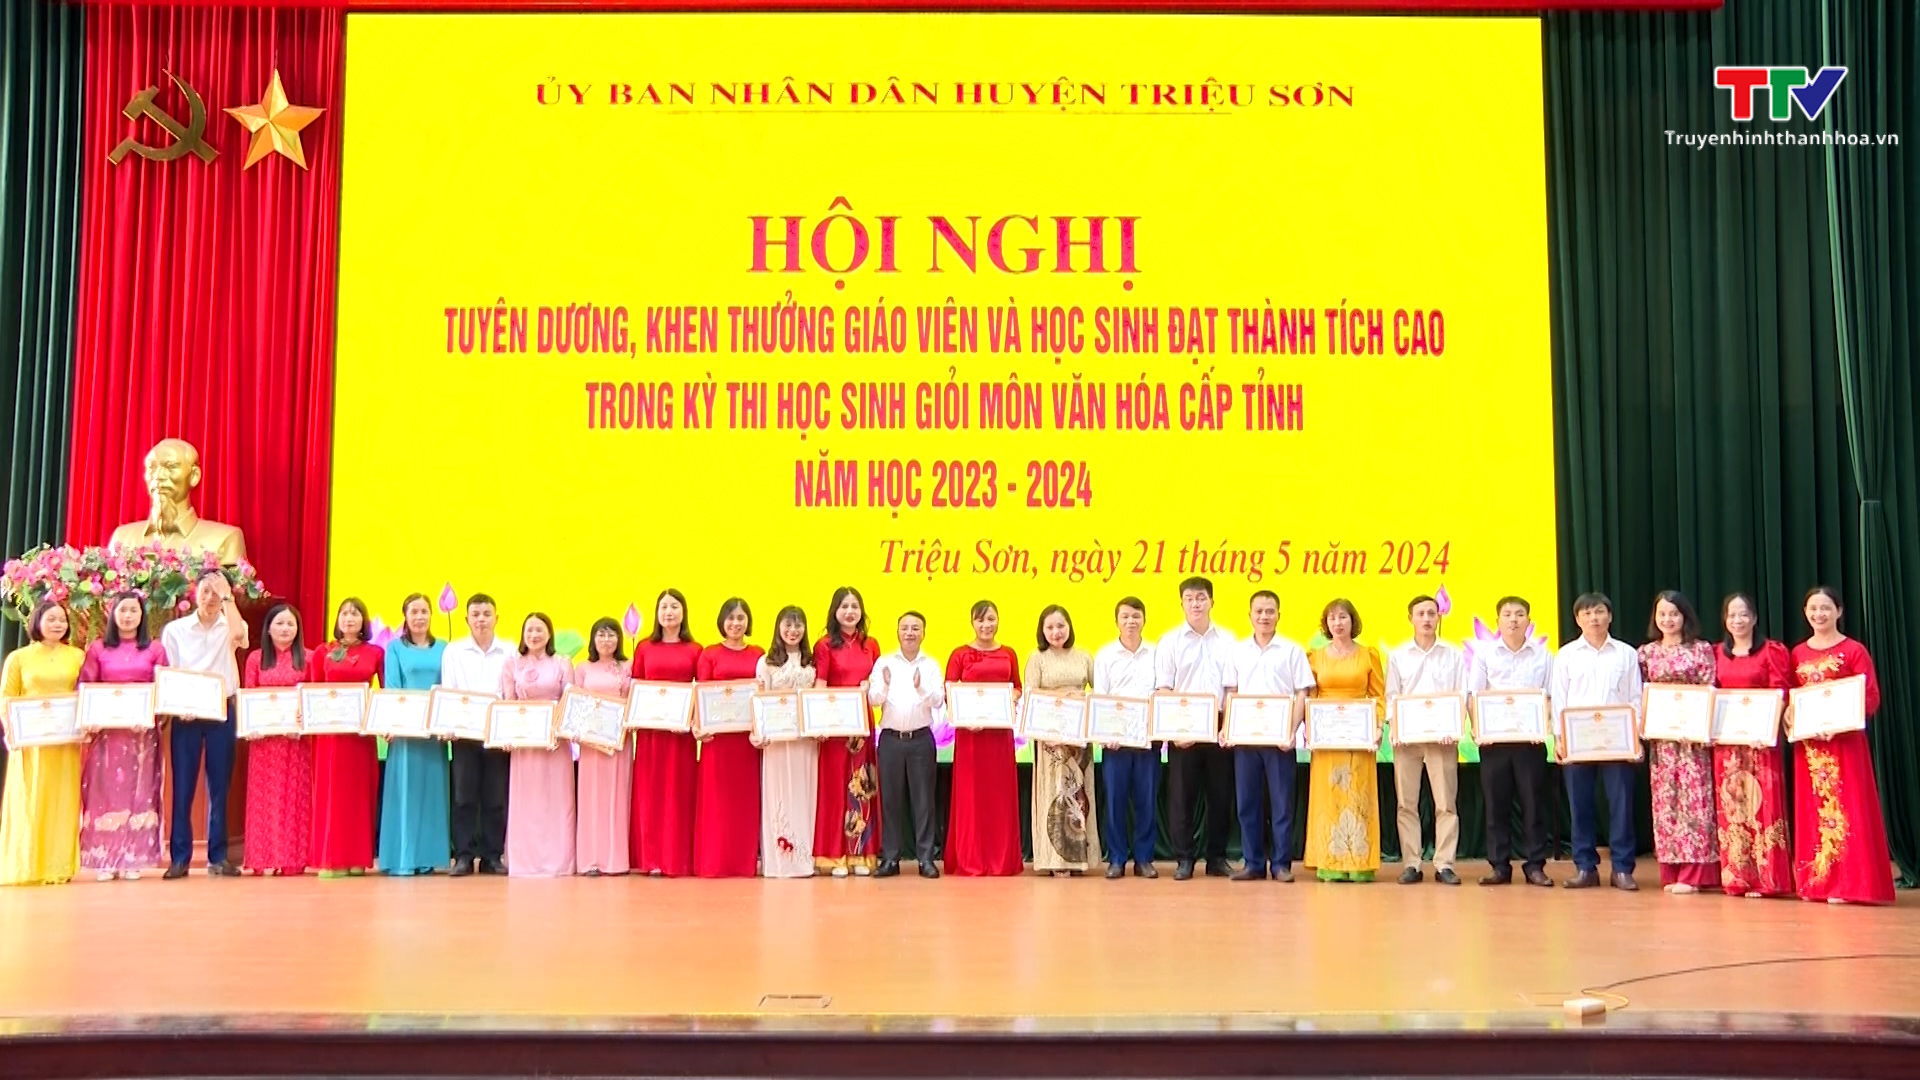 Huyện Triệu Sơn Tuyên dương, khen thưởng giáo viên và học sinh đạt thành tích cao năm học 2023 – 2024- Ảnh 2.